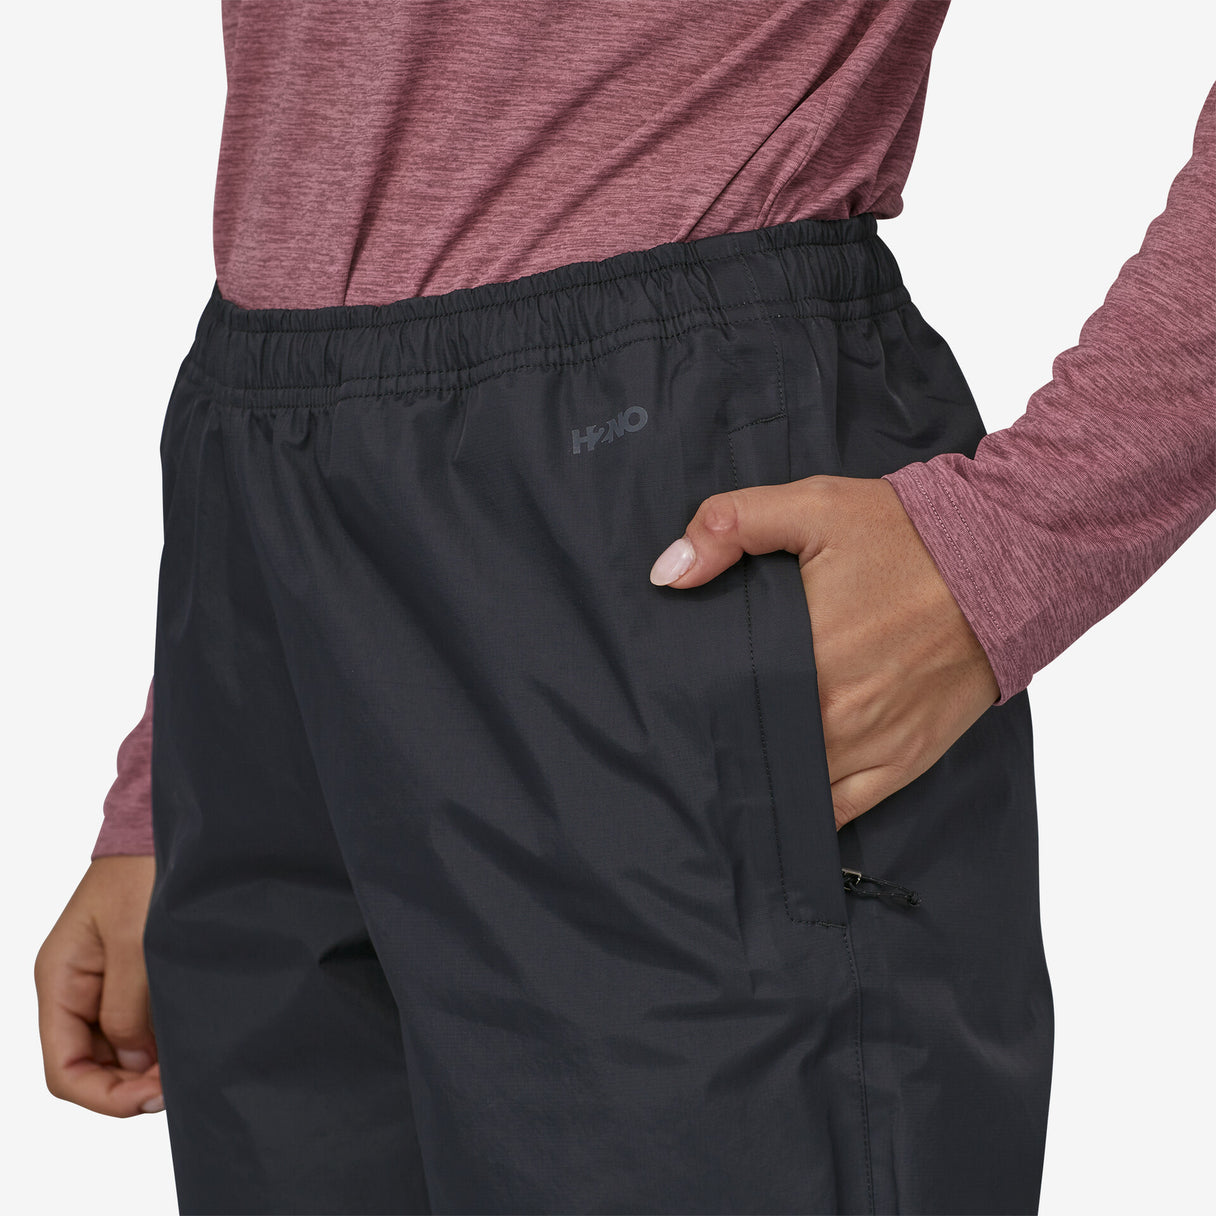 Patagonia Women's Torrentshell 3L Pants - Regular